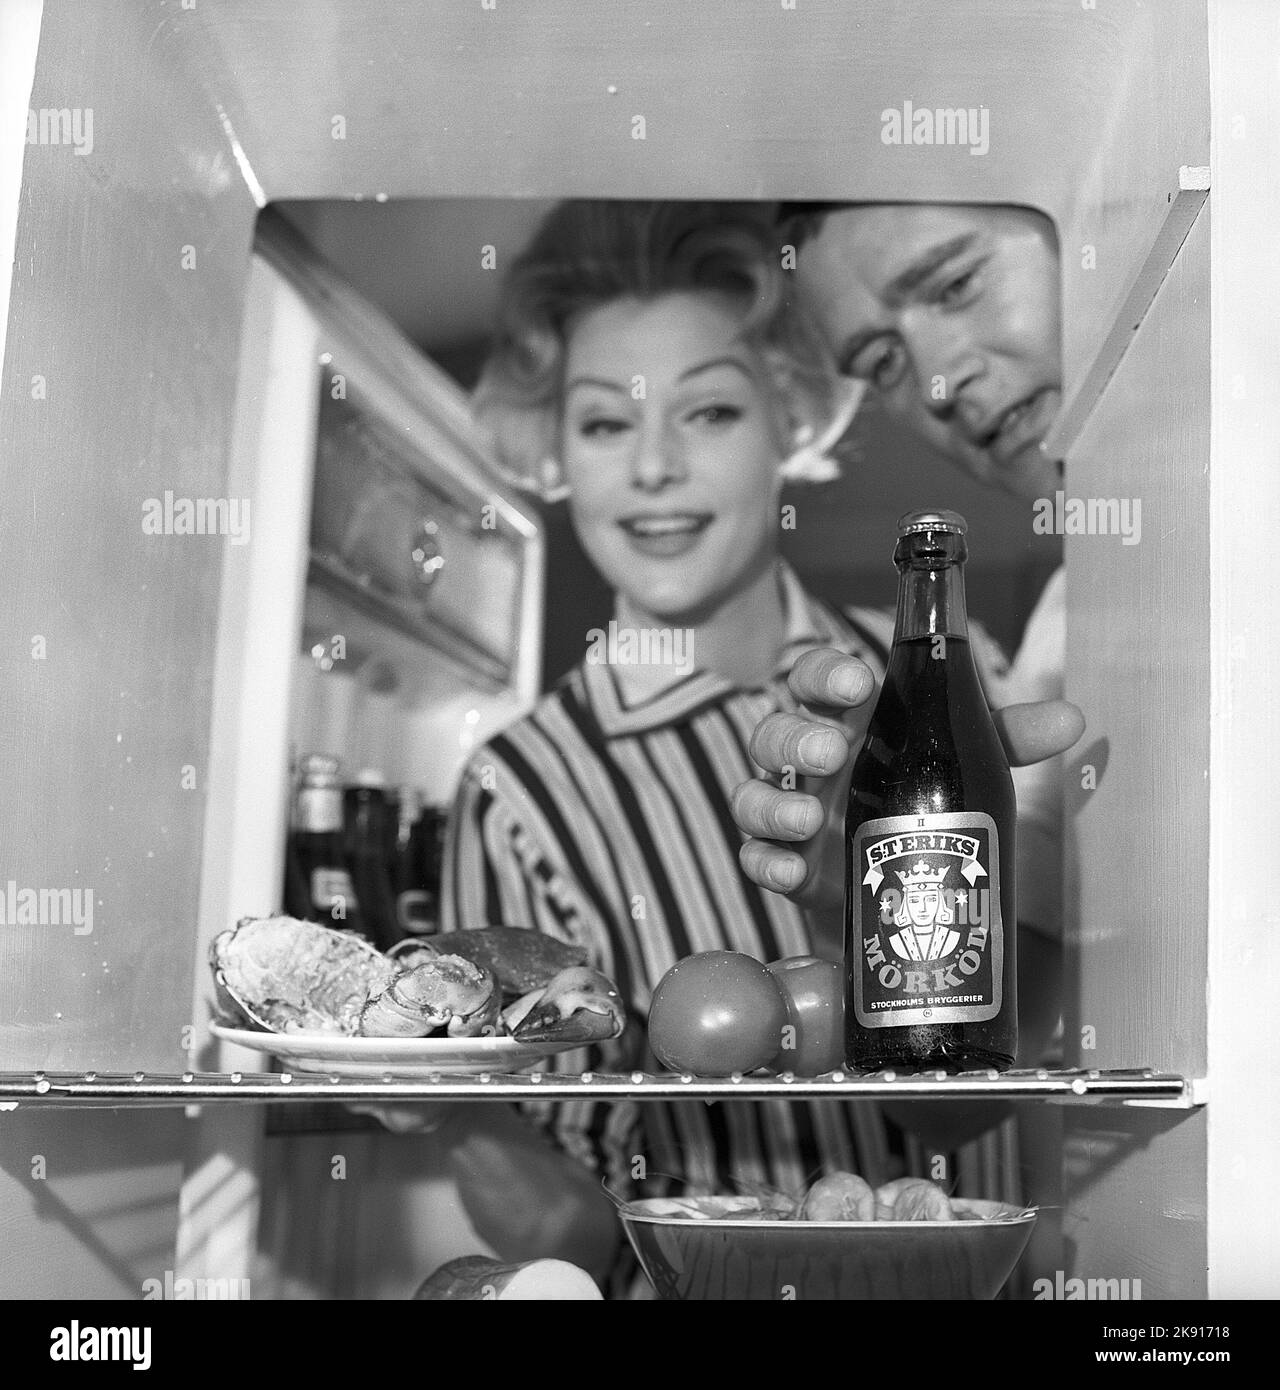 Dans la cuisine 1950s. Un couple dans leur cuisine et au réfrigérateur où la nourriture et la bière sont conservées. Suède 1959. Kristoffersson réf. CH77-7 Banque D'Images